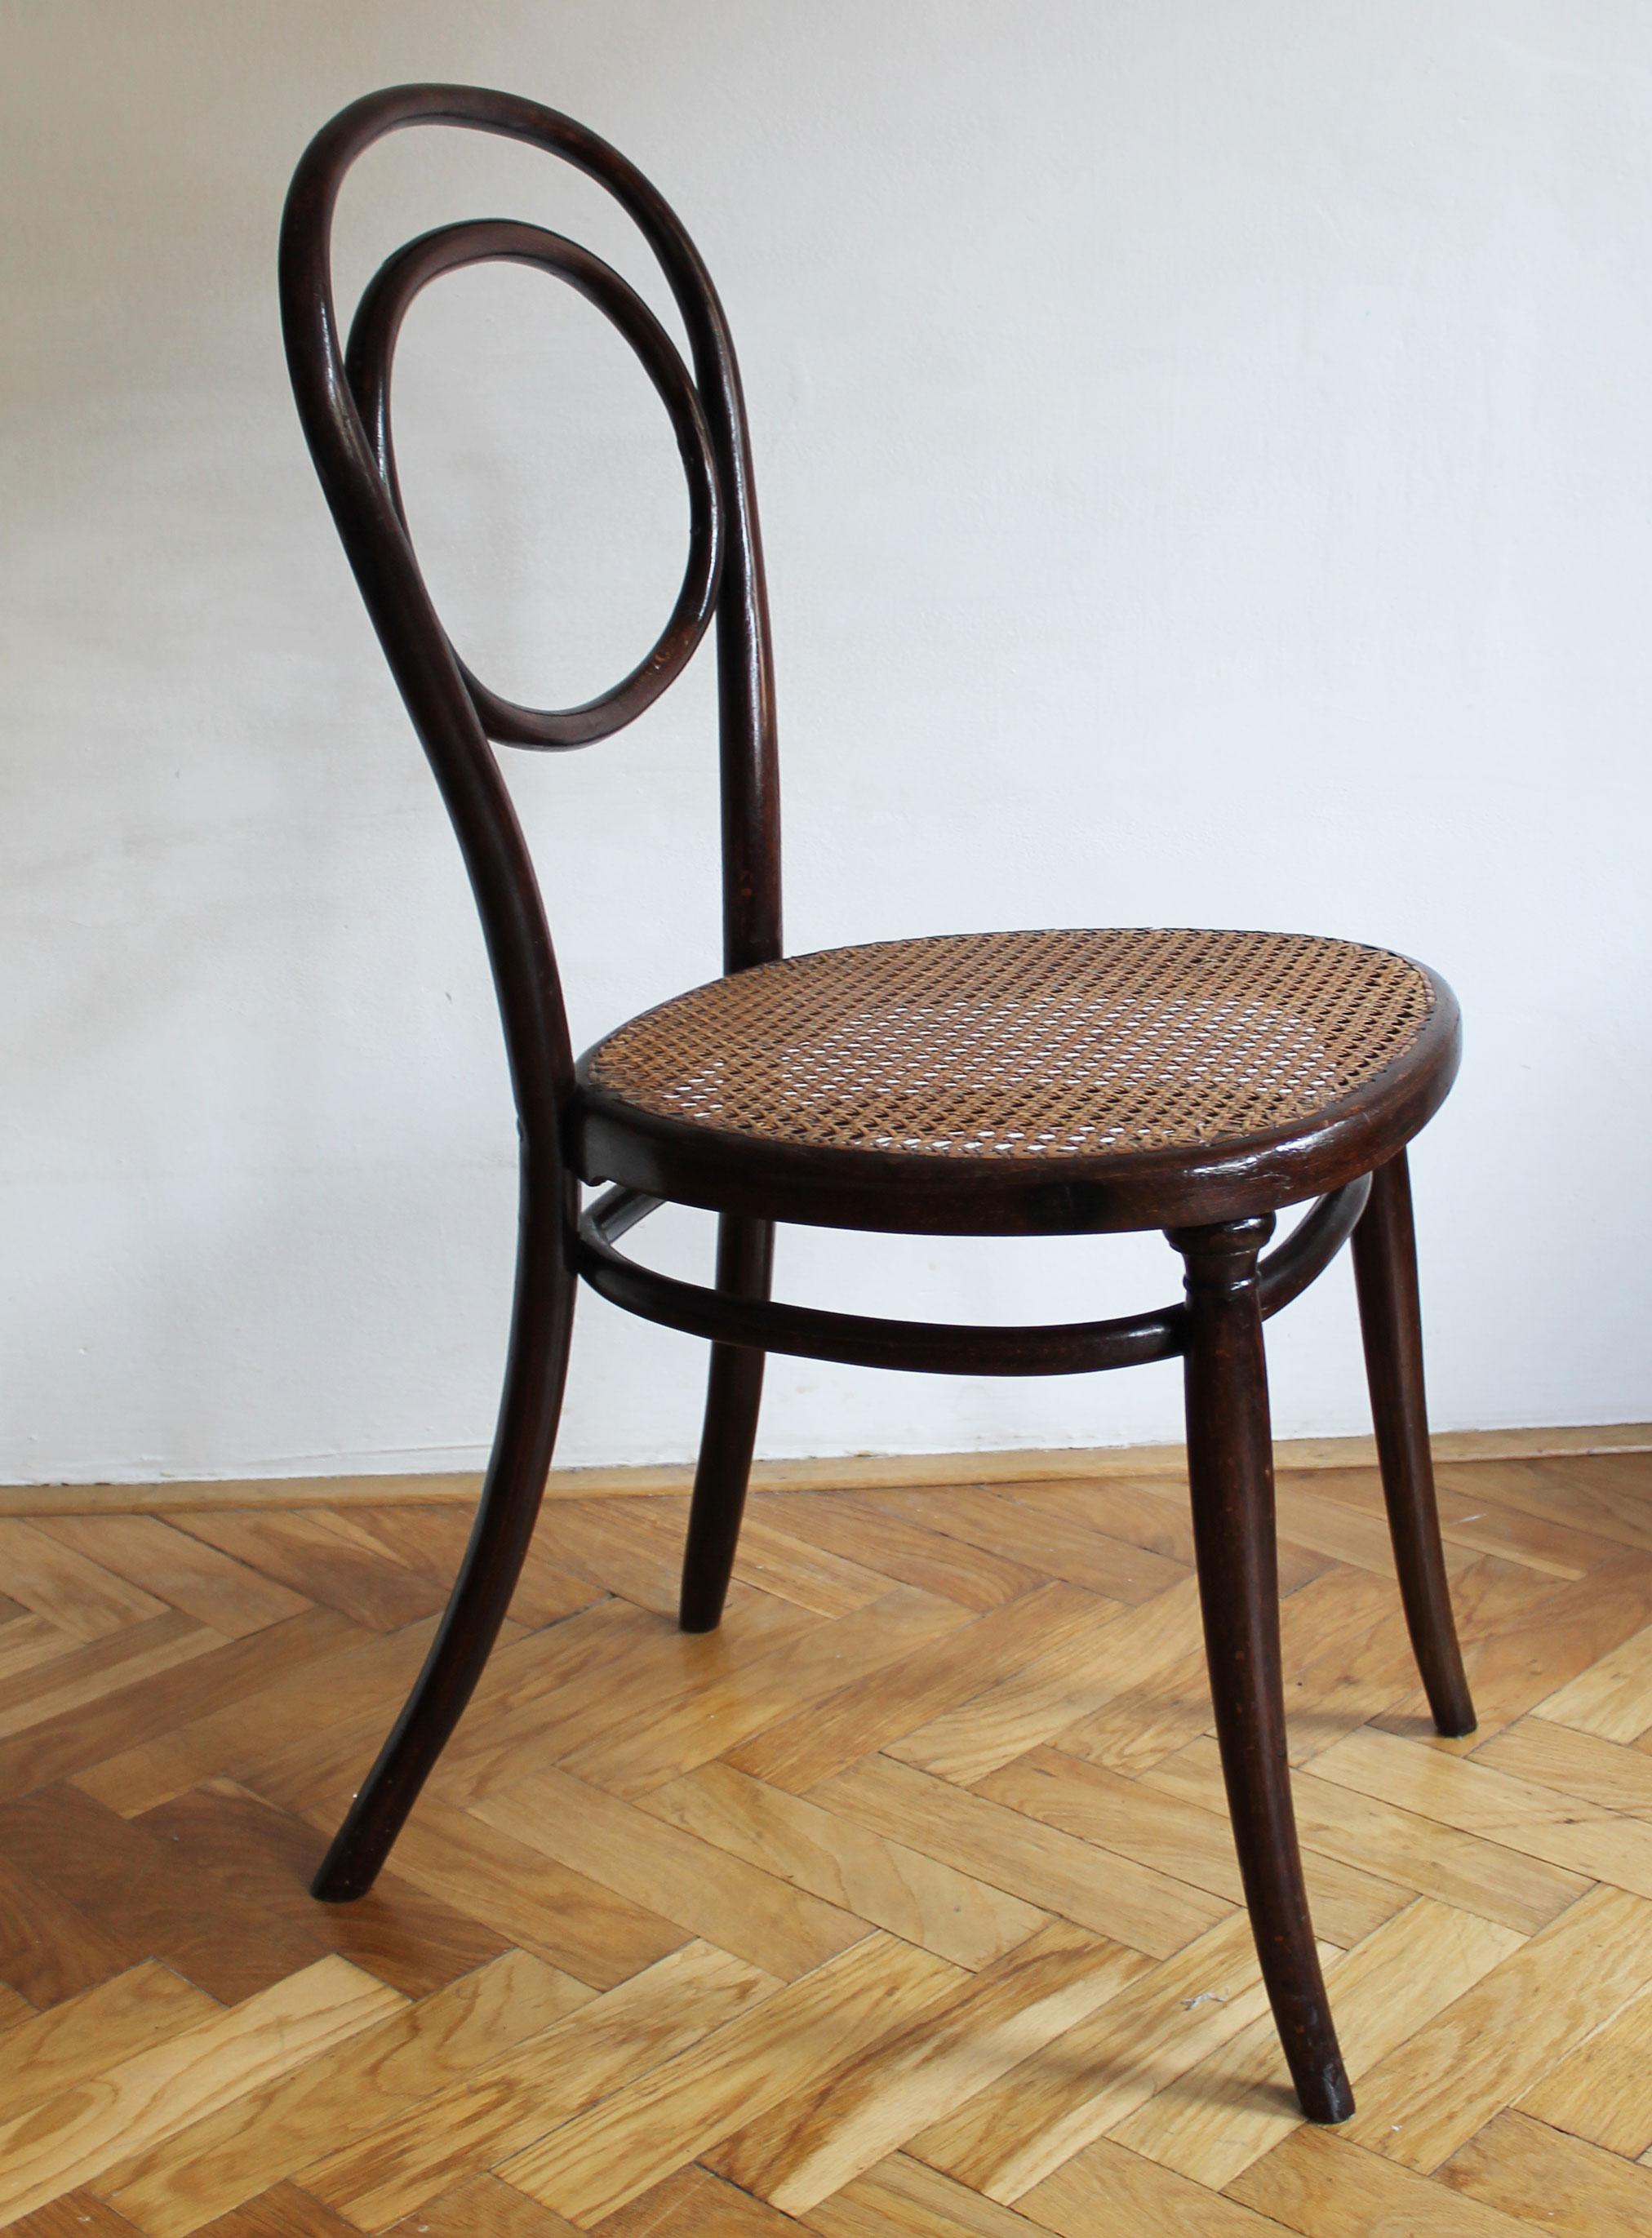 Ein seltener Bugholz-Esszimmerstuhl mit schön gemustertem Holz und geflochtenem Rattansitz. Dieses Stück wurde von den Gebrüdern Thonet um 1850 entworfen und hergestellt. Im alten Thonet-Möbelkatalog finden wir den Stuhl als 